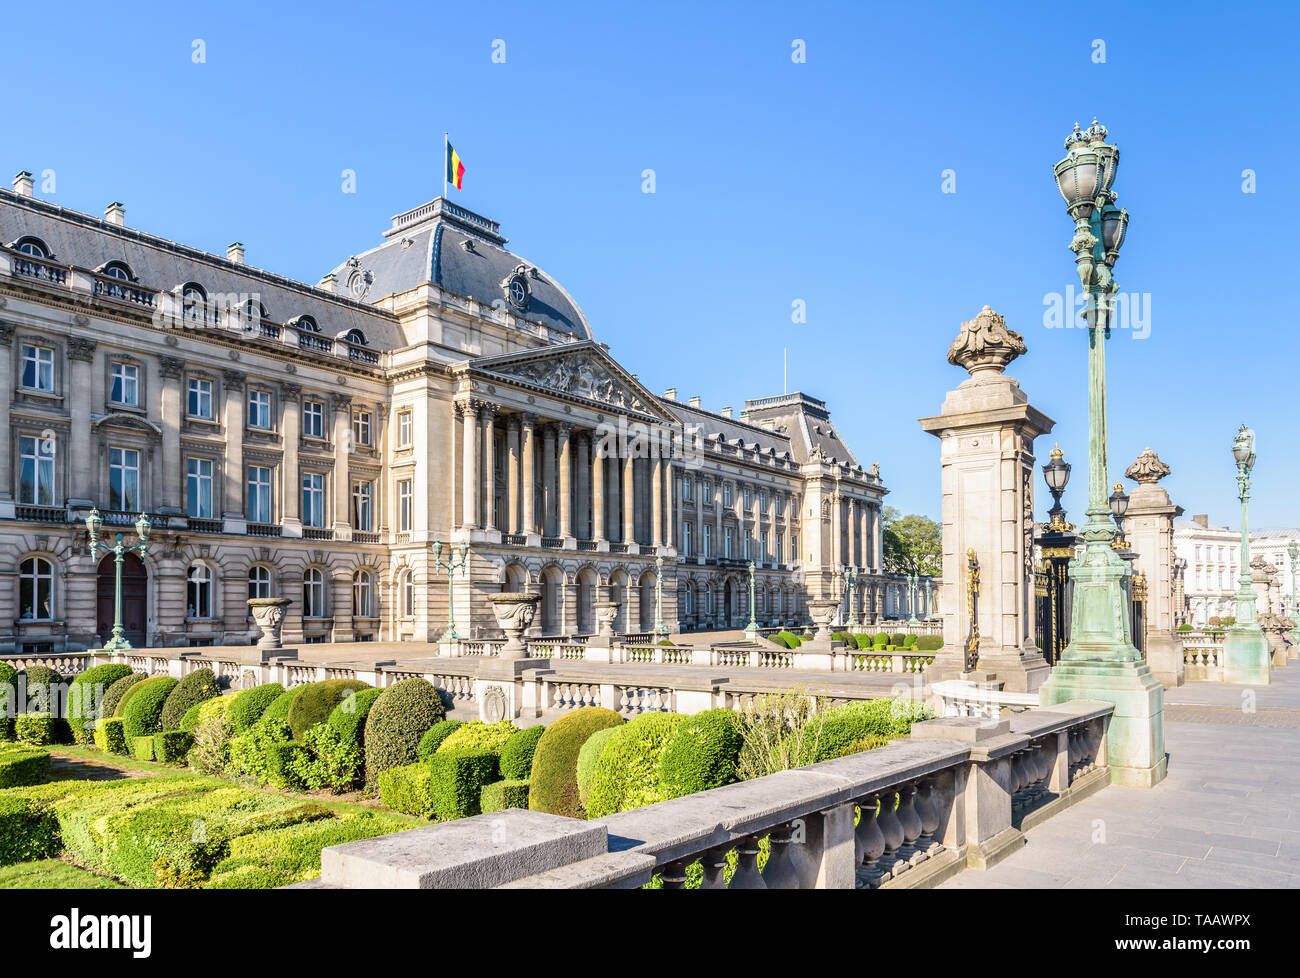 Hauptfassade und Vorgarten der Königliche Palast von Brüssel, die offizielle Palast des Königs und der Königin der Belgier in Brüssel, Belgien. Stockfoto